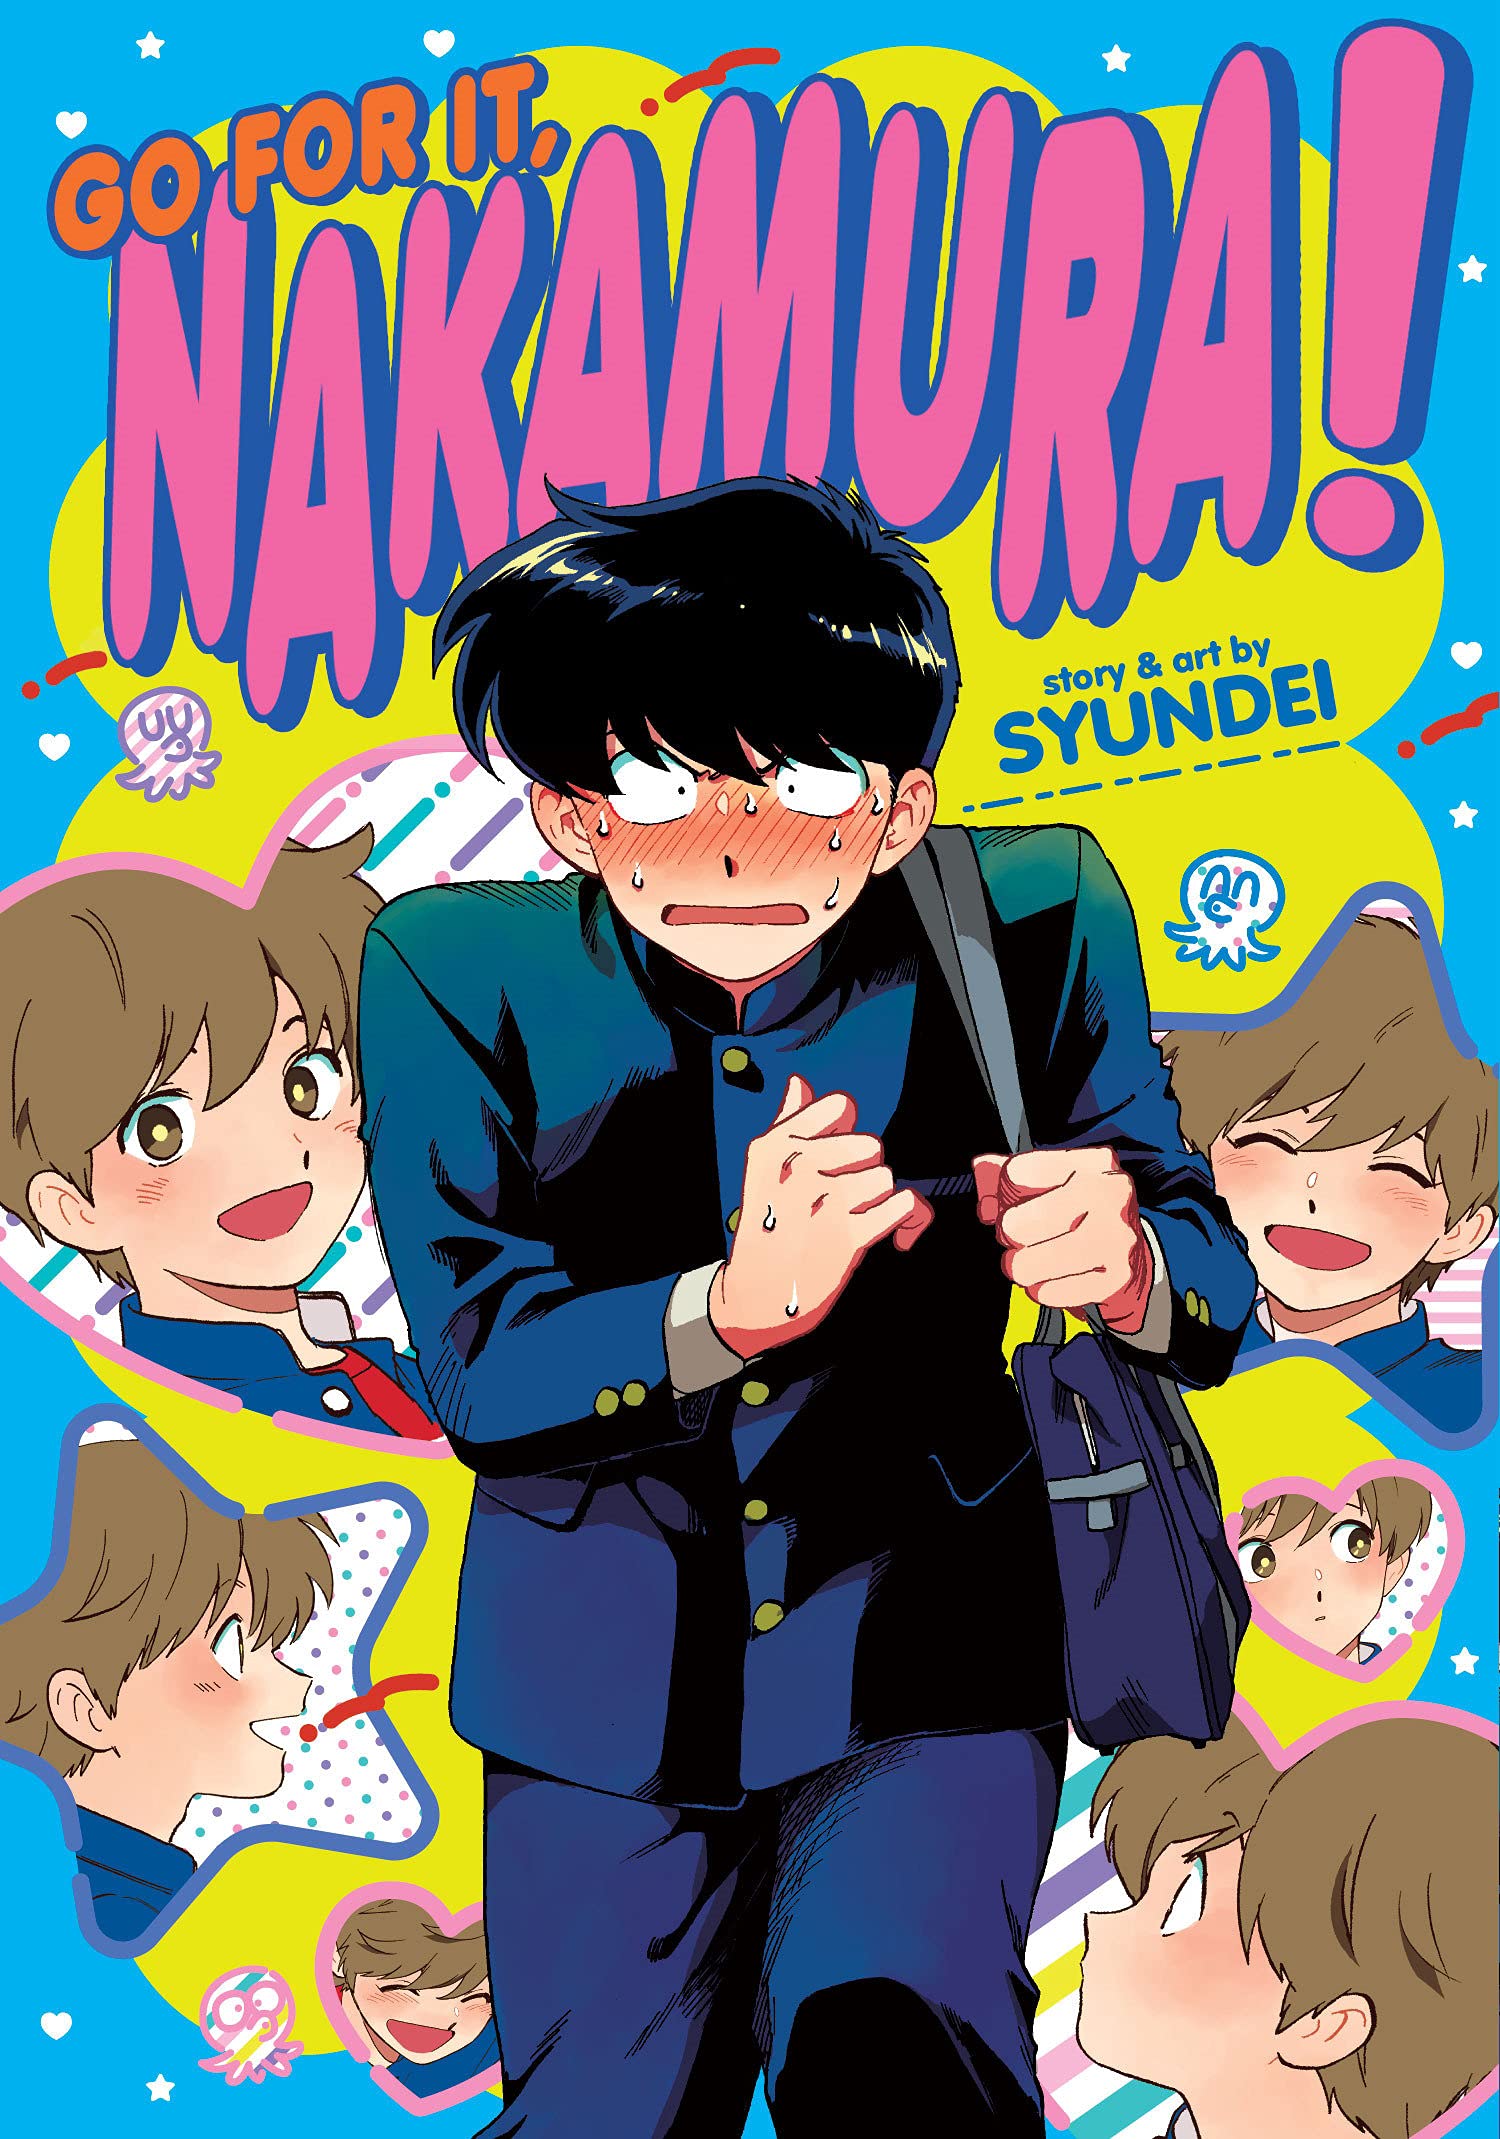 Ganbare! Nakamura-kun!! (Go For It, Nakamura!)